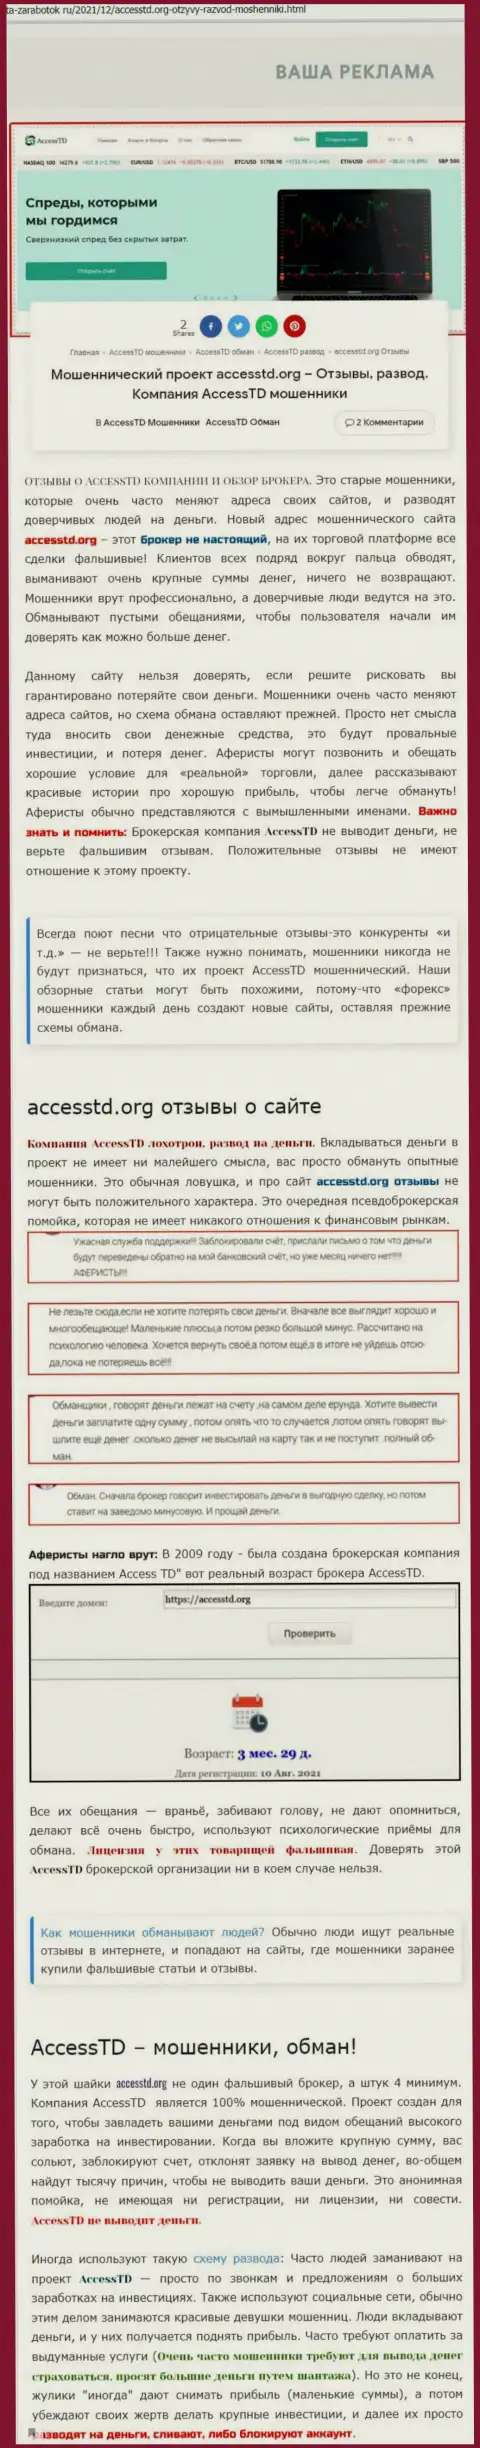 AccessTD - МОШЕННИКИ !!! Обзор противозаконных деяний конторы и отзывы пострадавших